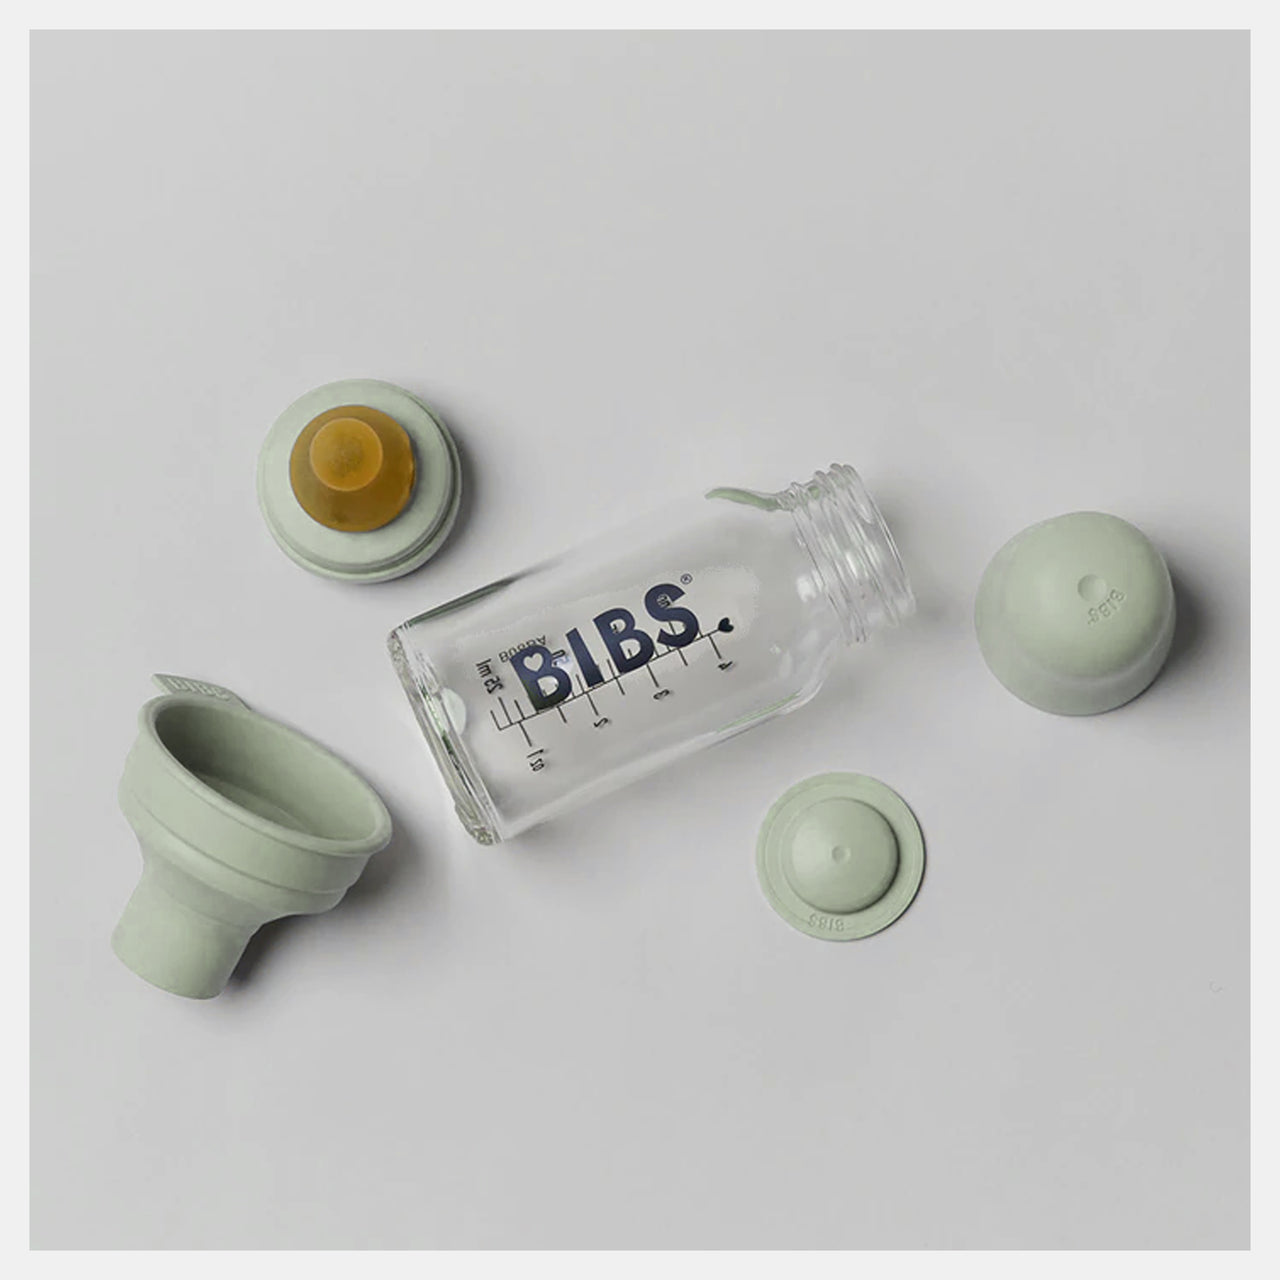 Bibs - Latex pour biberon en verre - Sauge